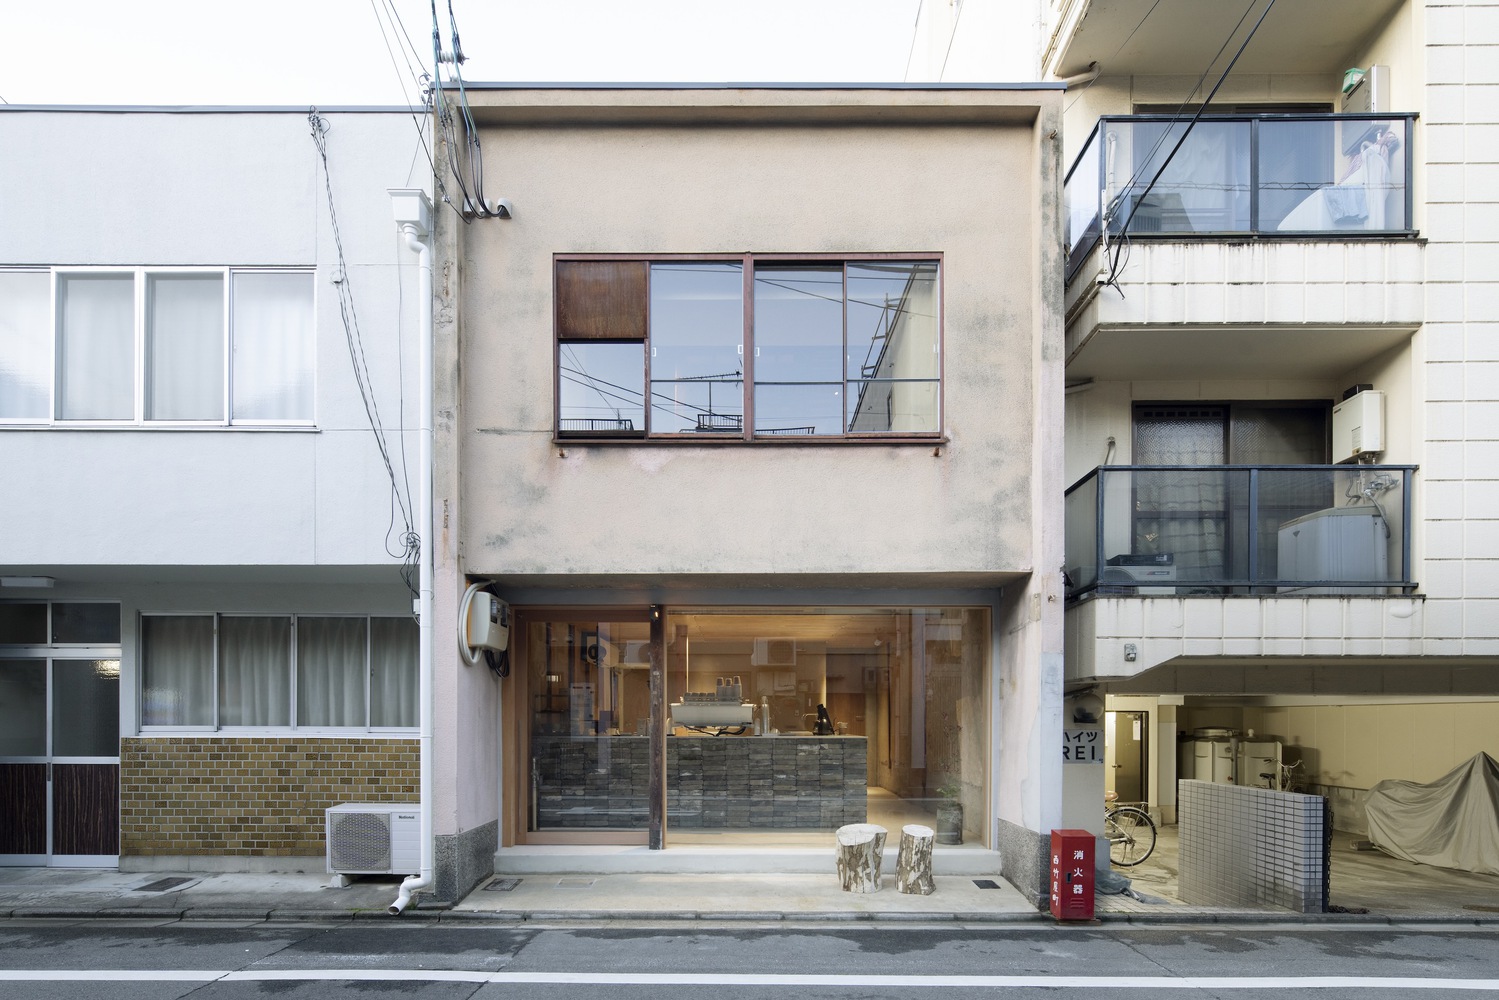 日本,京都,咖啡厅设计案例,Hoo. Café,甜甜圈店,62㎡,咖啡厅设计,Koyori,咖啡店设计,町屋改造